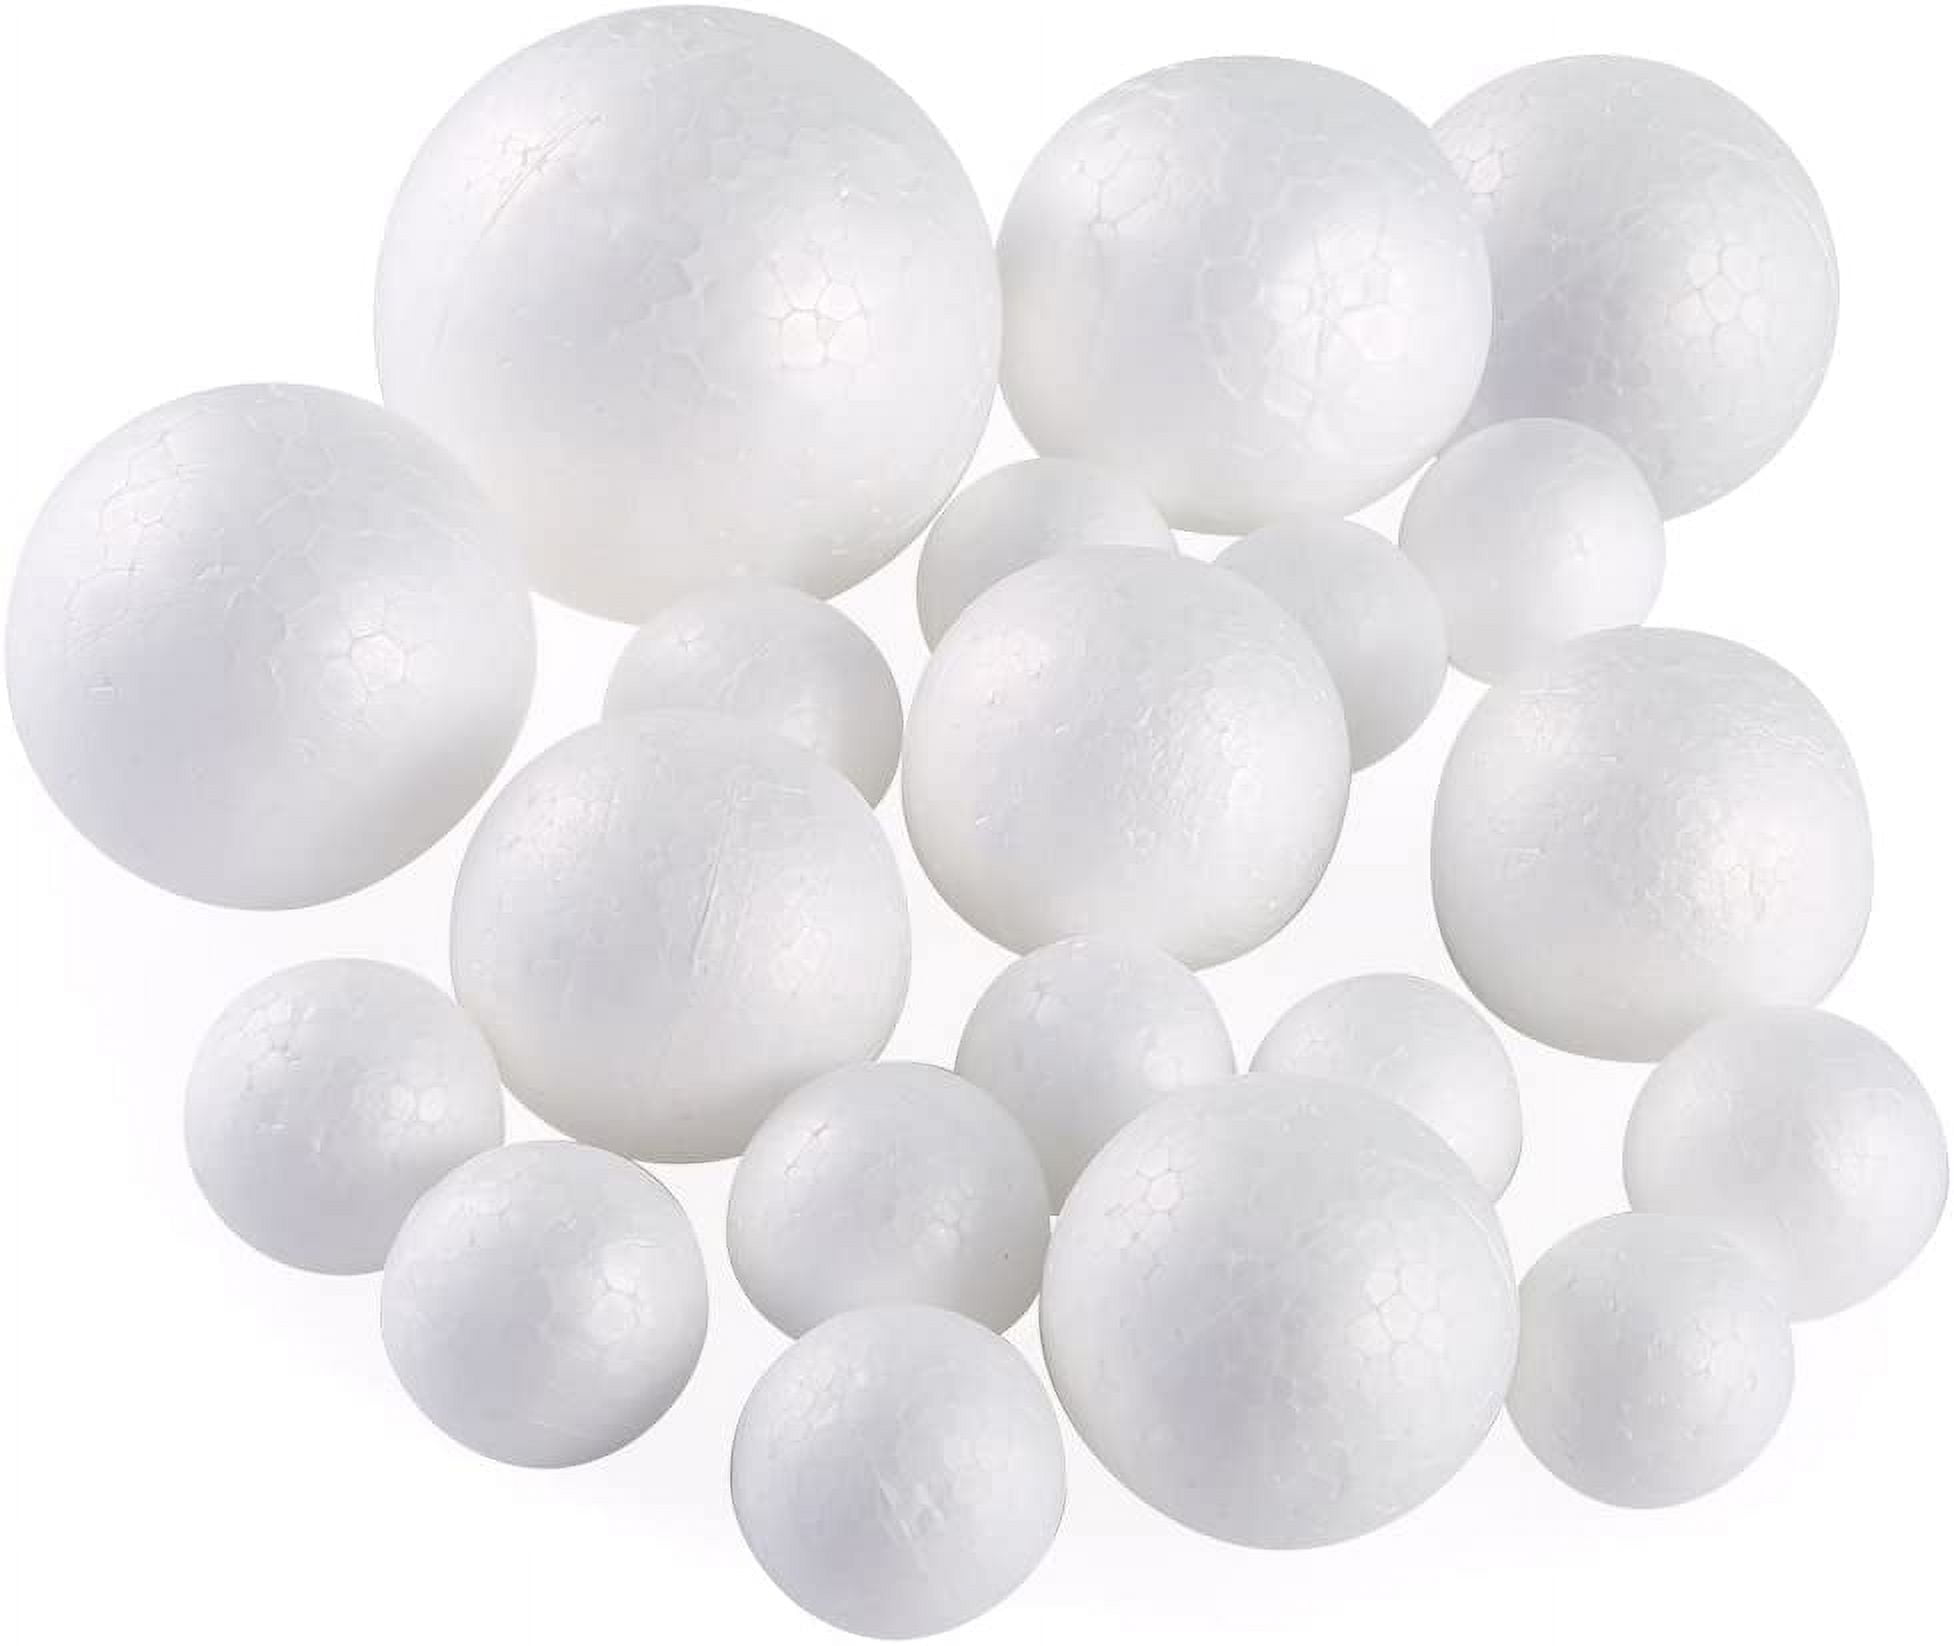 Handy Hands Decor Satin Covered Styrofoam Balls 3 4/Pkg-Turquoise